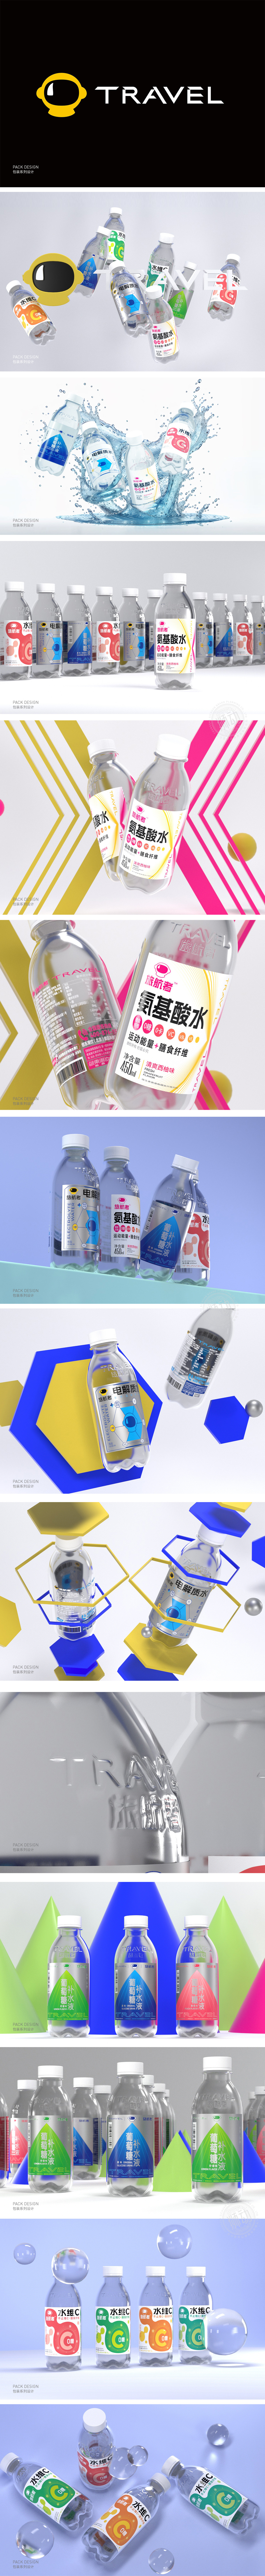 旅航者饮品产品包装系列策划设计